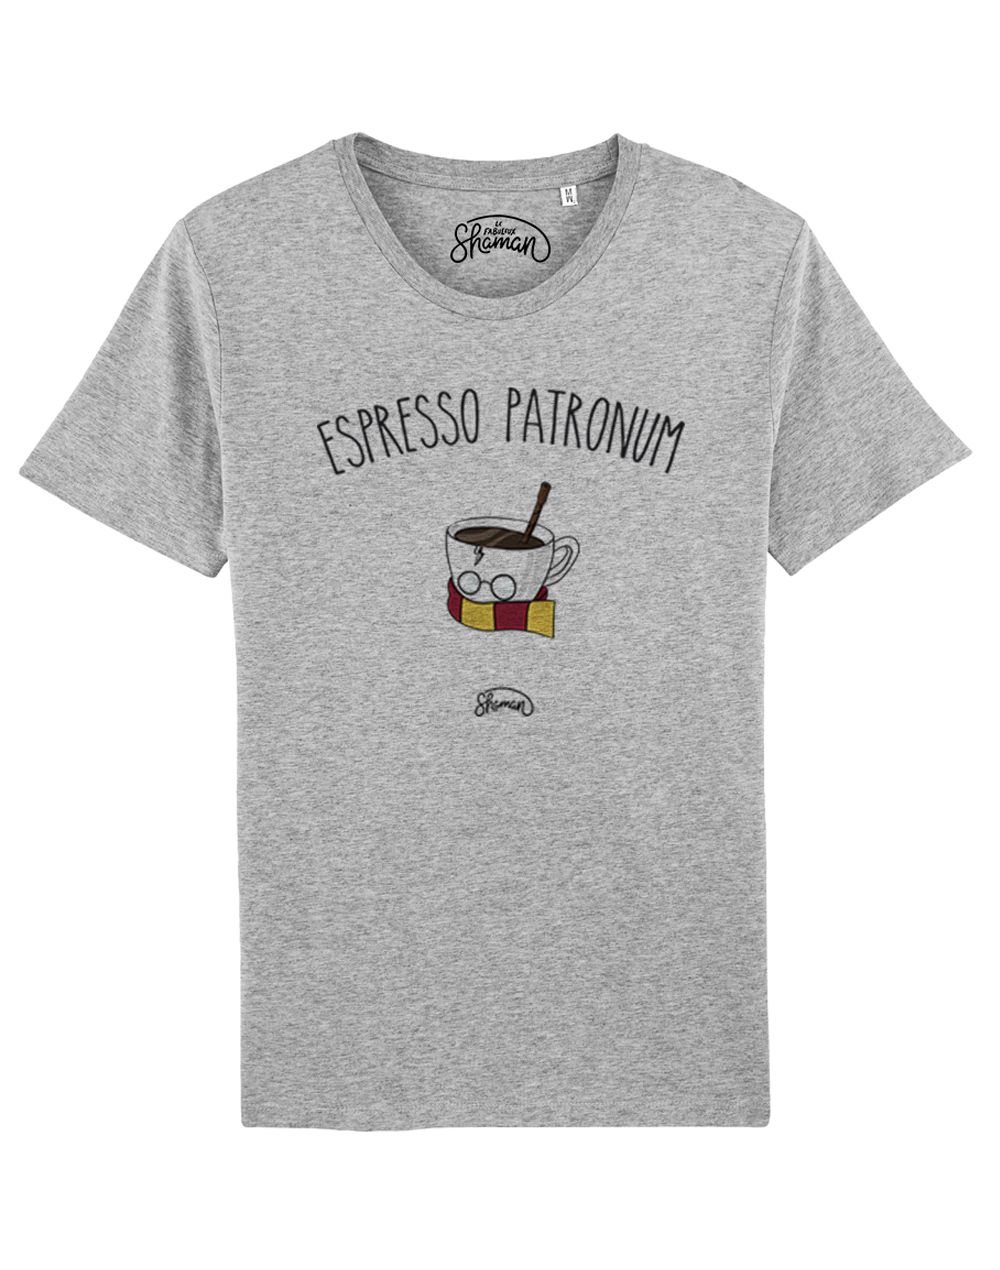 Tee-shirt "Espresso patronum"